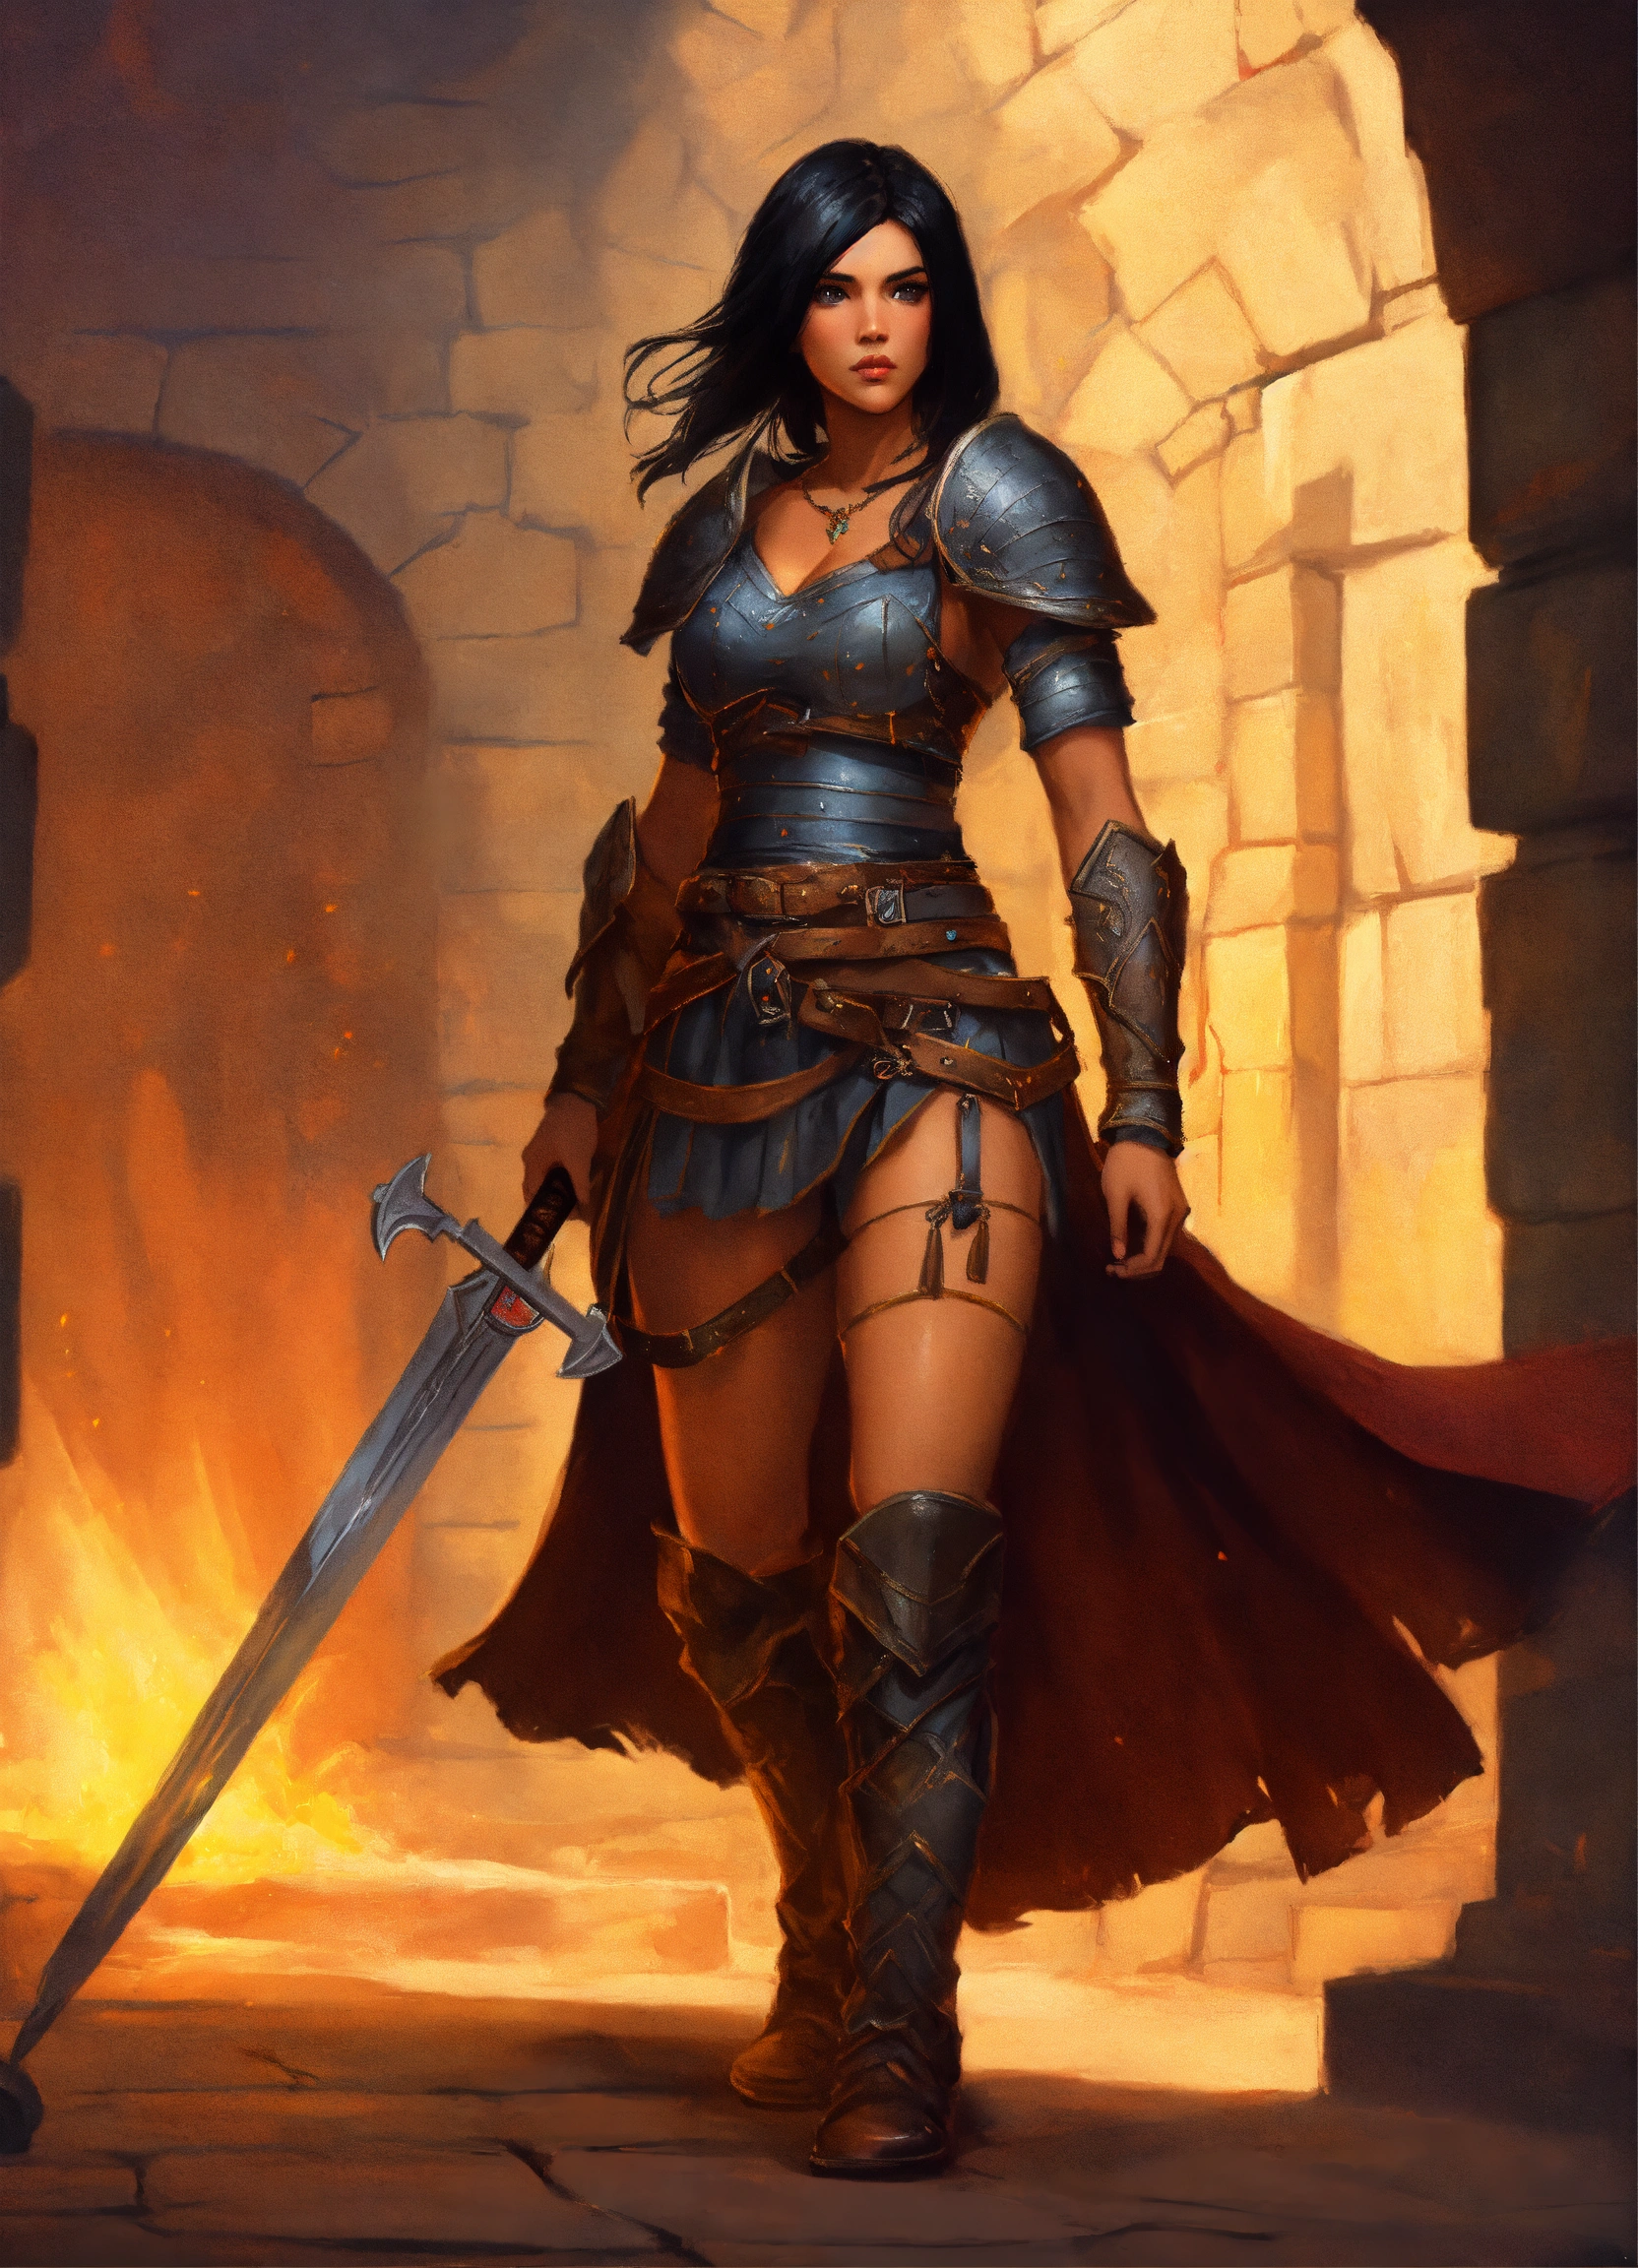 Lexica - Black-haired female warrior prisoner, d&d fantasy art